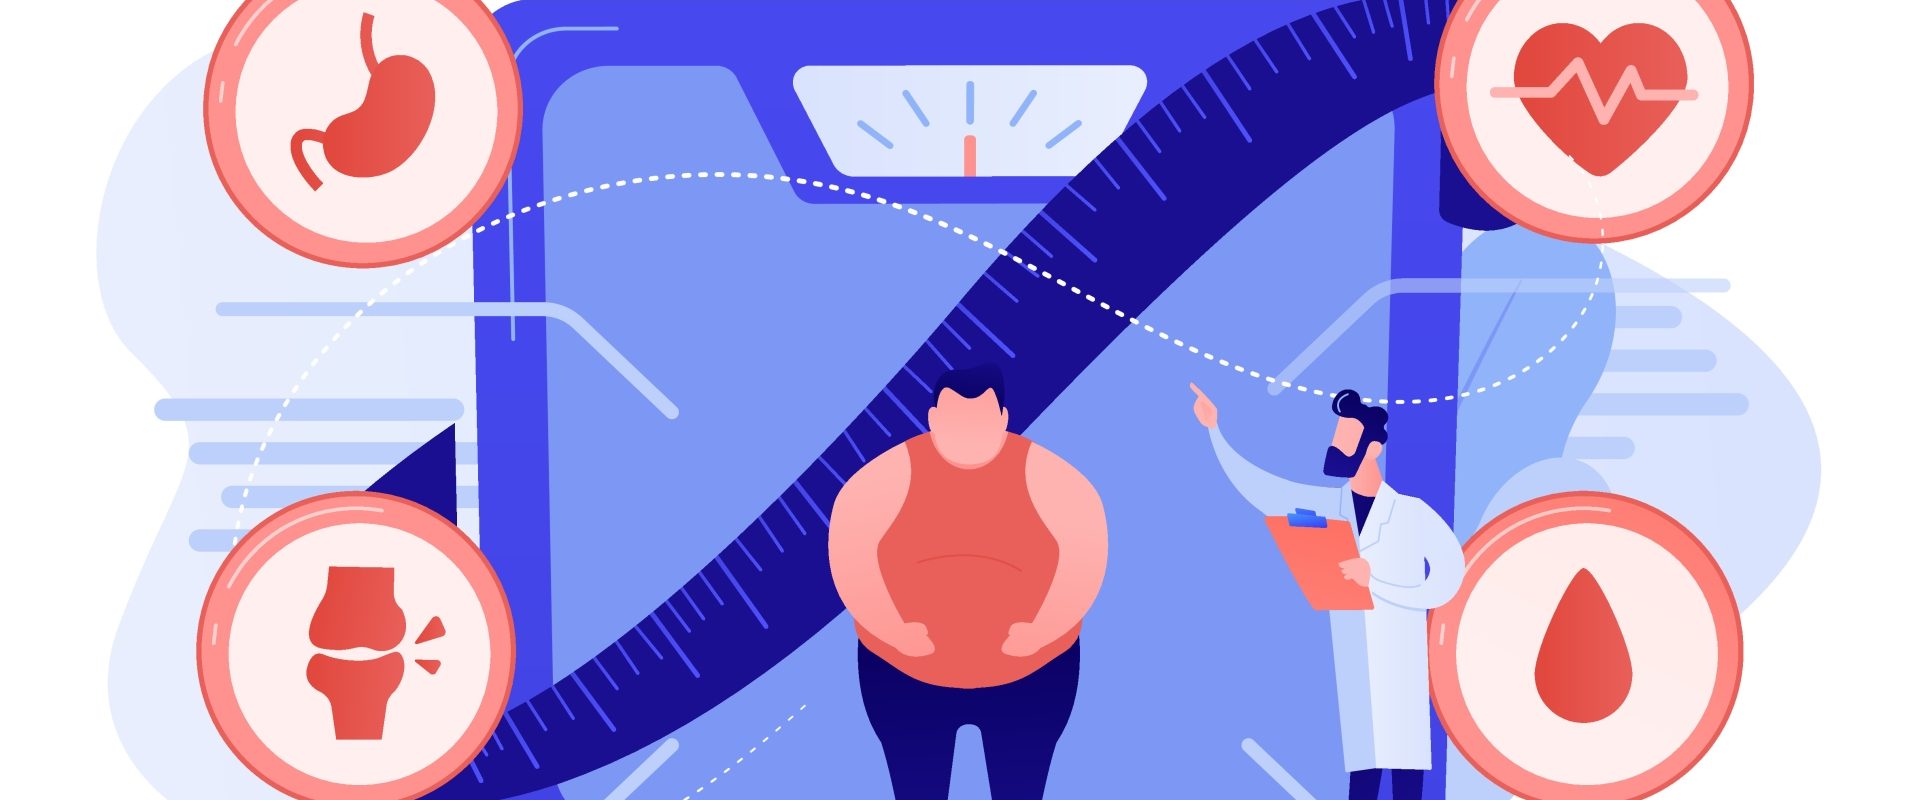 Otyłość brzuszna u mężczyzn - co oznacza i jak sobie z nią poradzić? Ilustracja przedstawiająca otyłego mężczyznę stojącego na wadze pod okiem lekarza.